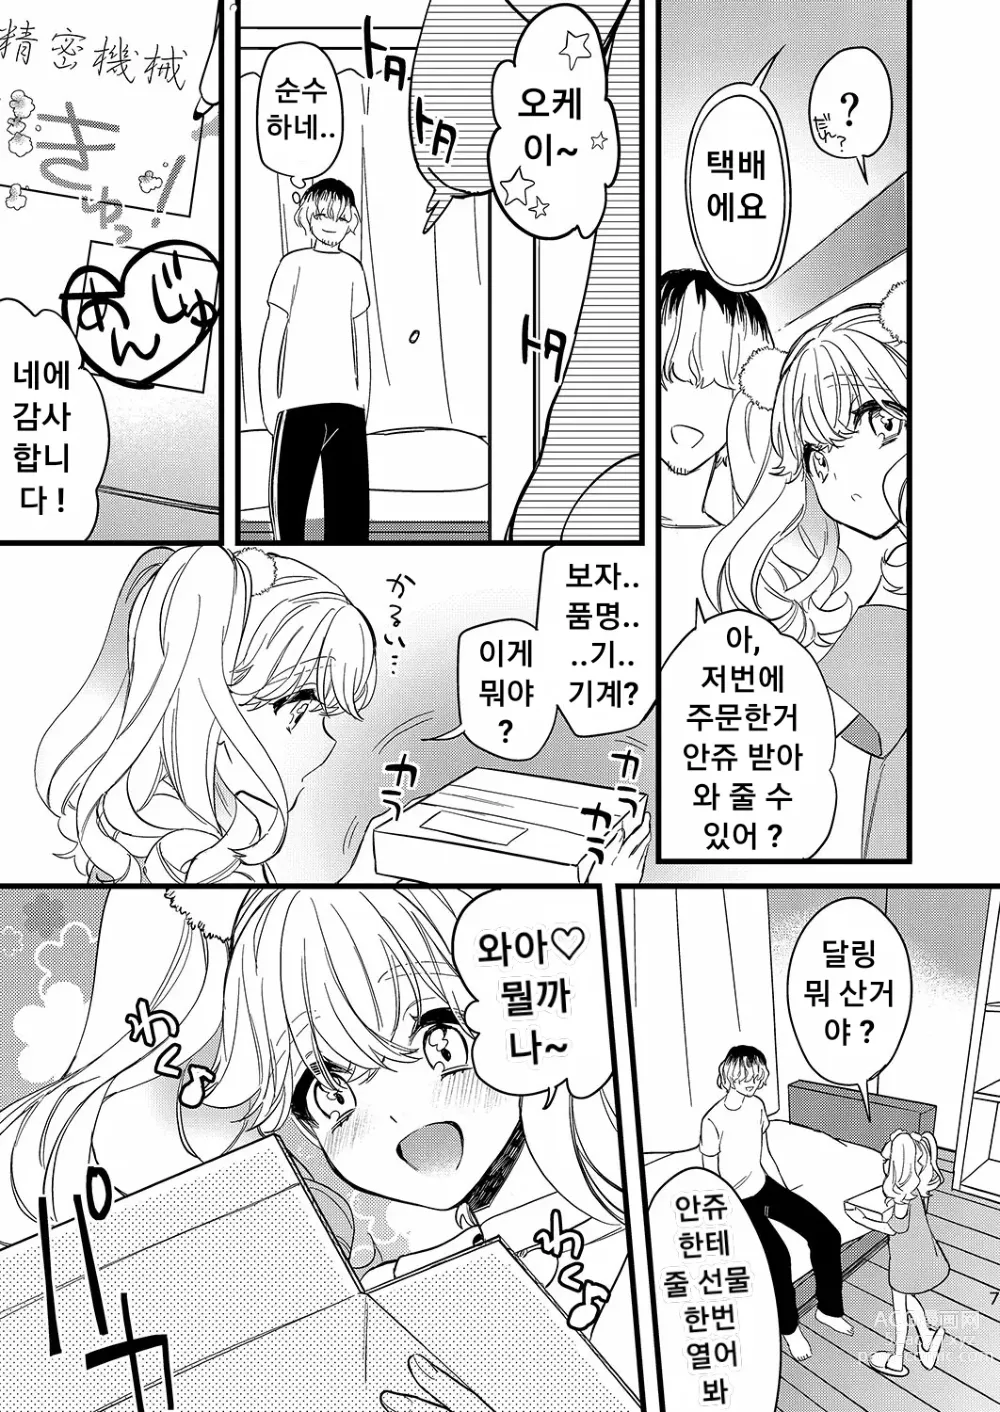 Page 7 of doujinshi 안쥬랑 두근두근 엣찌한 데이트 하자구